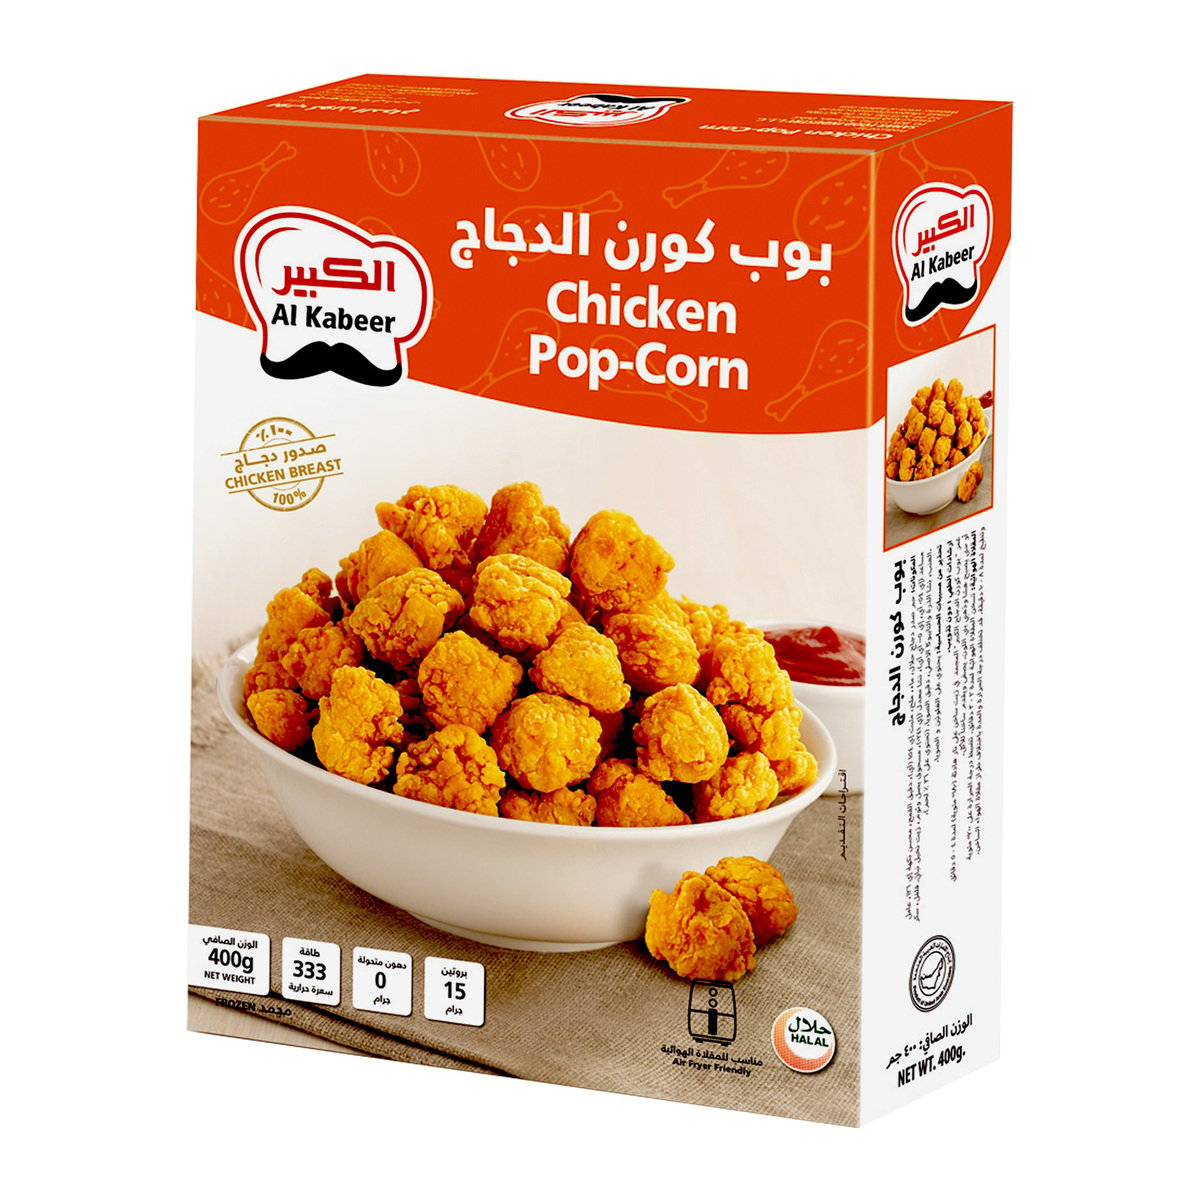 اشتري قم بشراء الكبير - بوب كورن دجاج ٤٠٠ غرام Online at Best Price من الموقع - من لولو هايبر ماركت Popcorns في السعودية